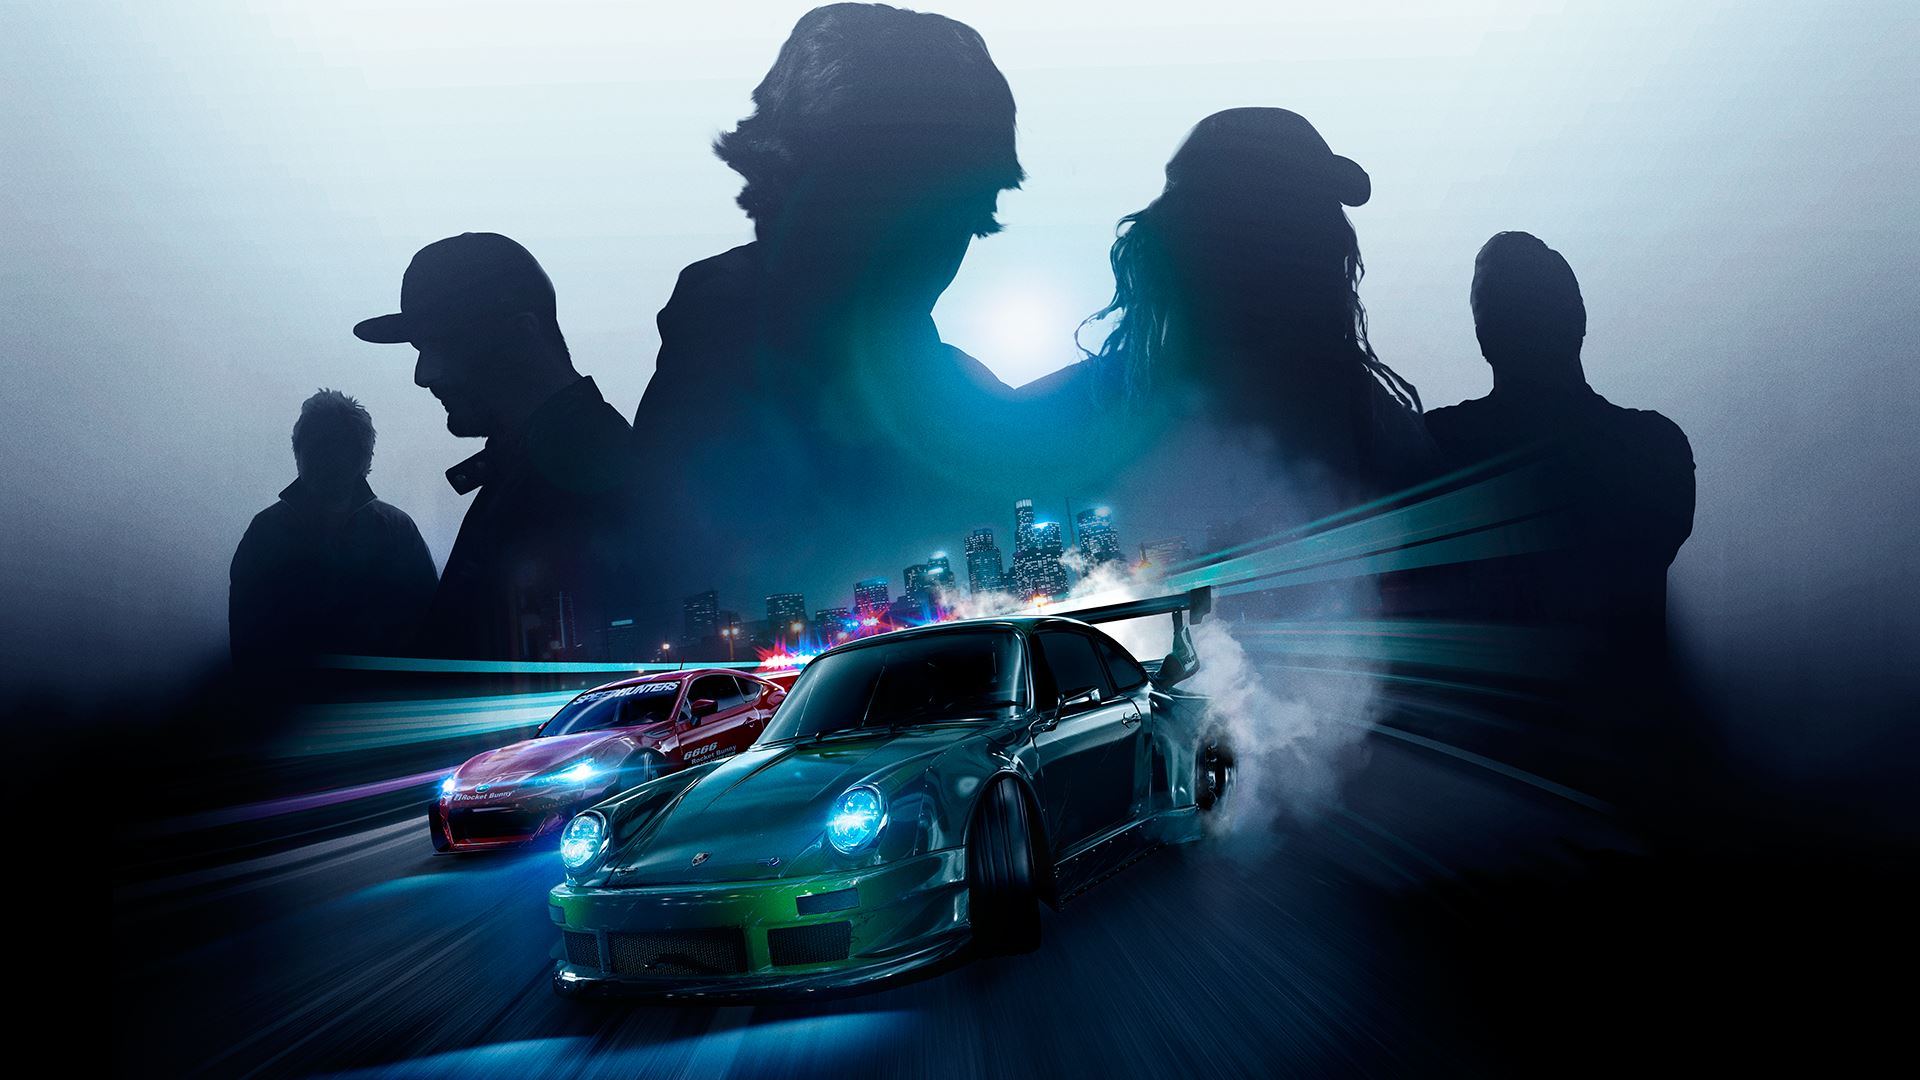 АНОНСЫ,ВИДЕО И СКРИНШОТЫ Купить аккаунт Need for Speed 2016 + ПОЧТА + СМЕНА ДАННЫХ на Origin-Sell.com